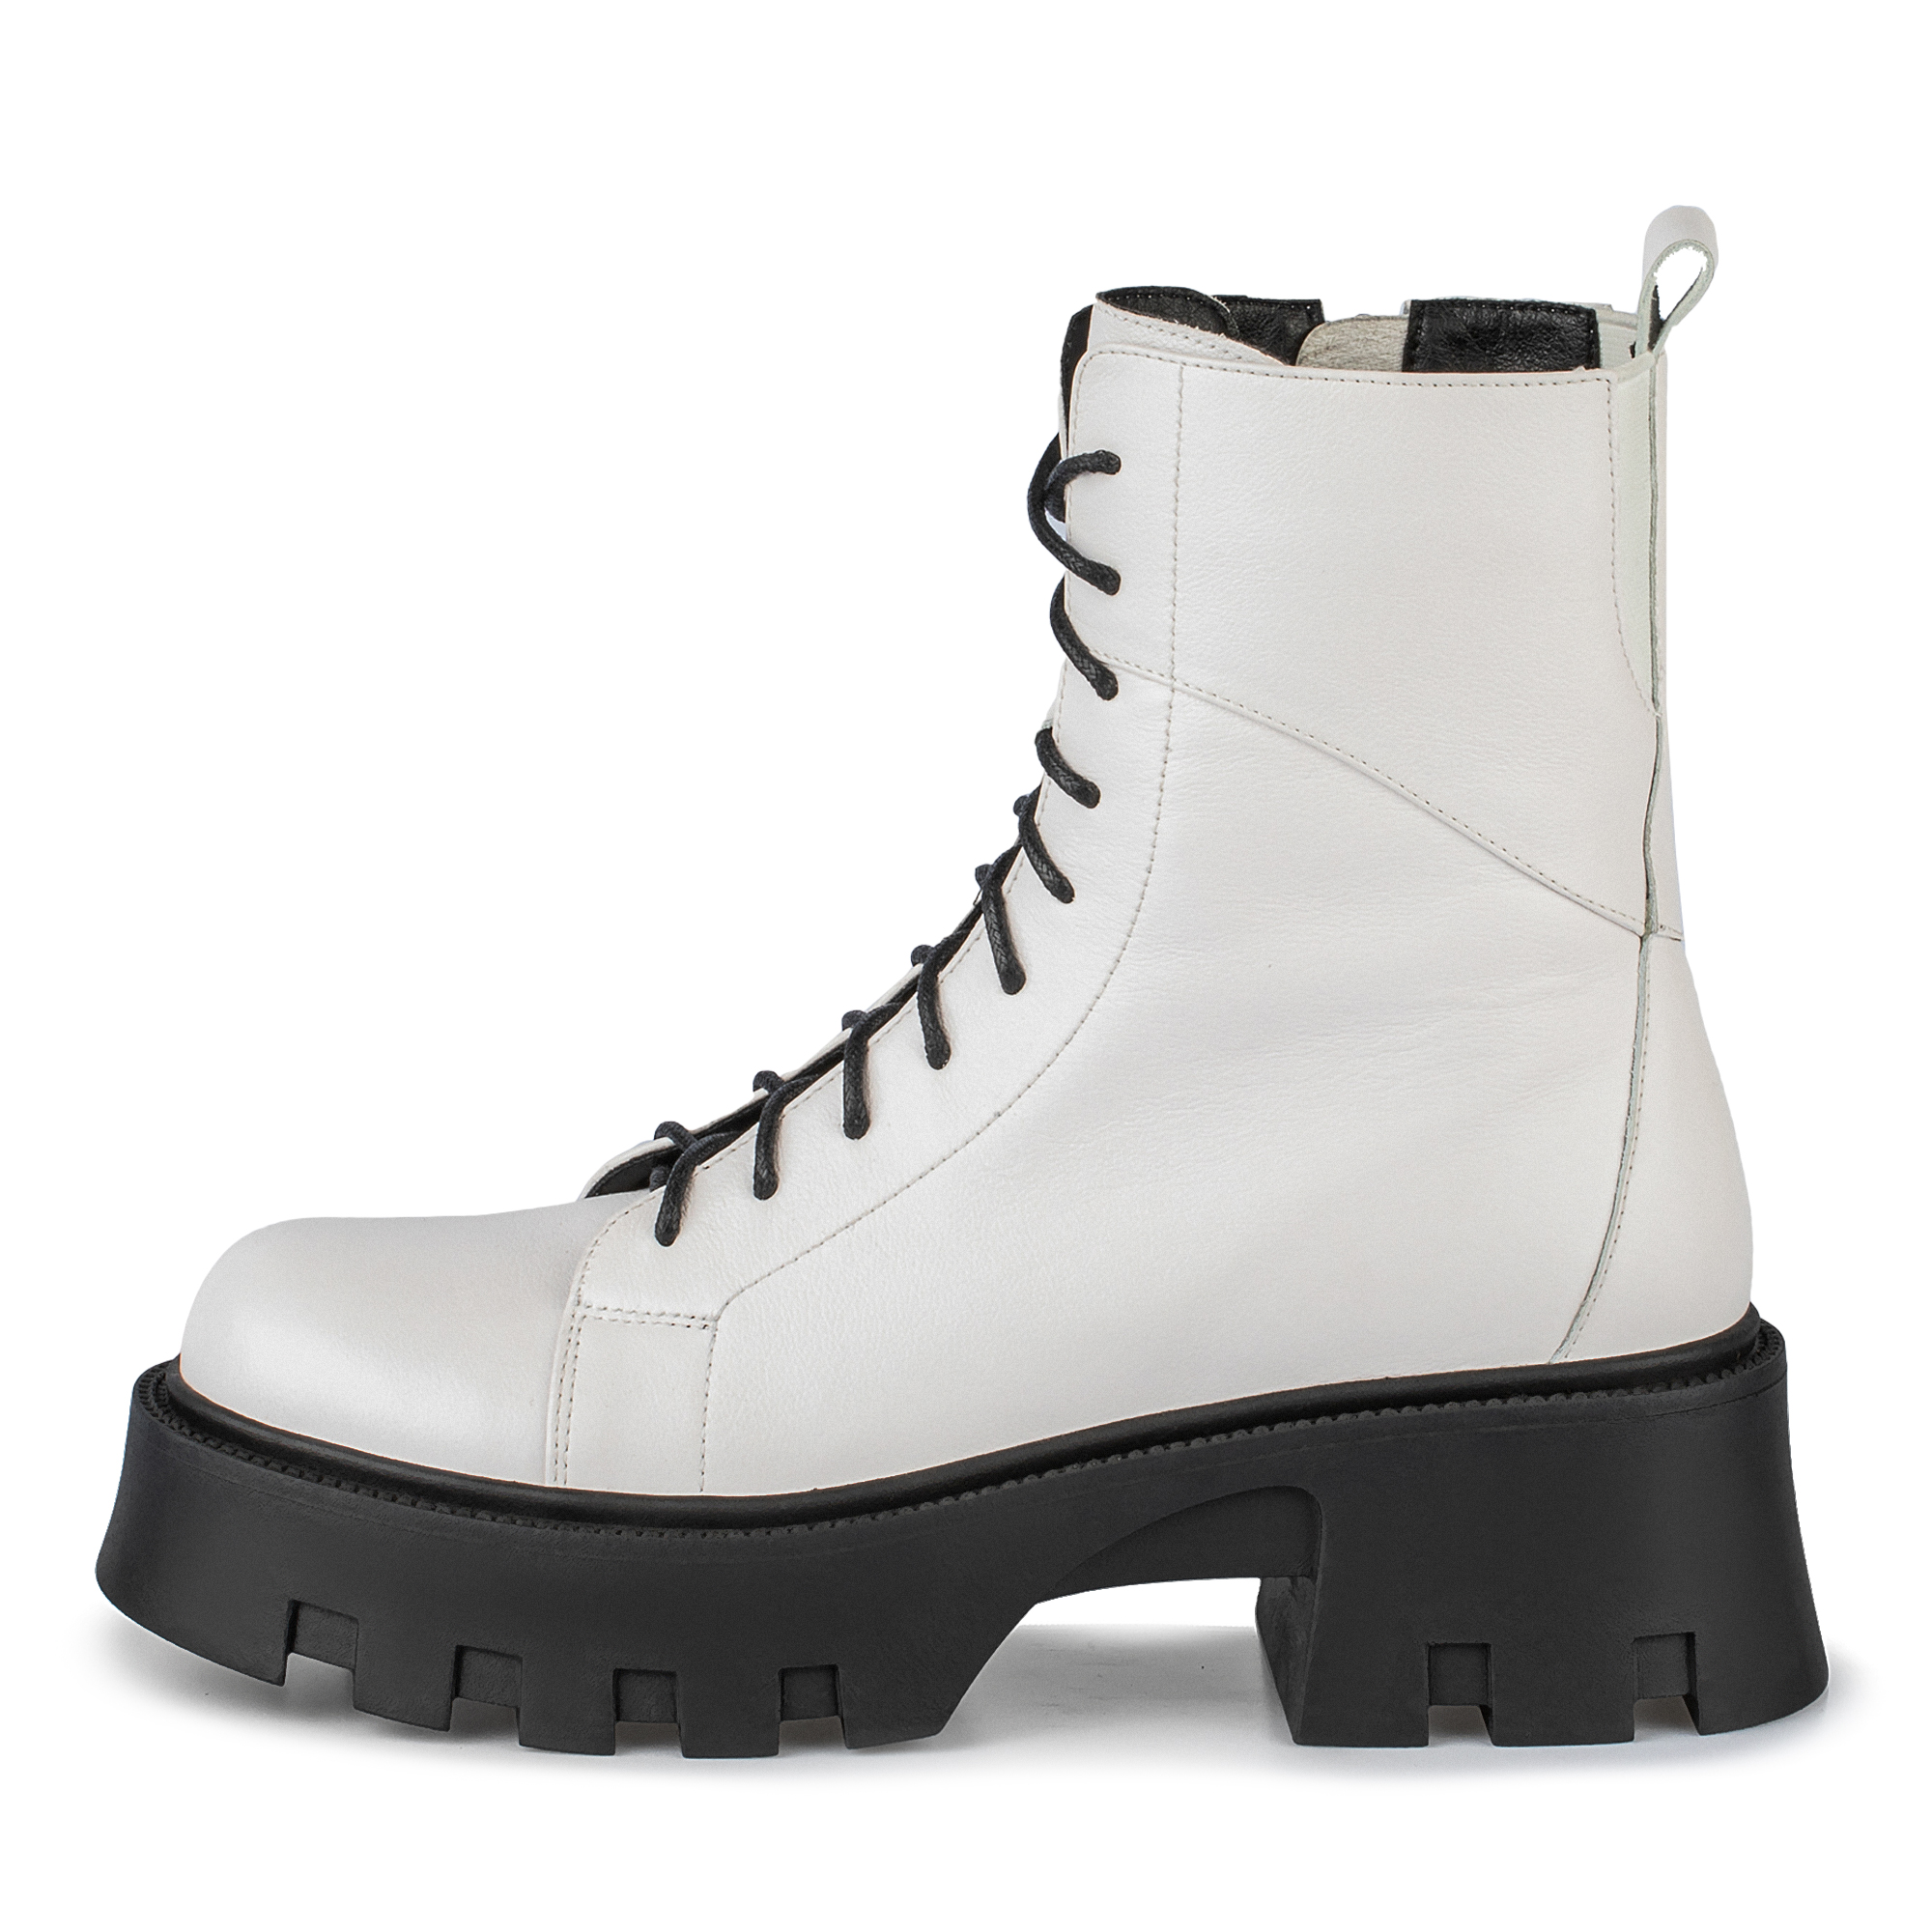 Ботинки Thomas Munz 080-620A-2601, цвет белый, размер 37